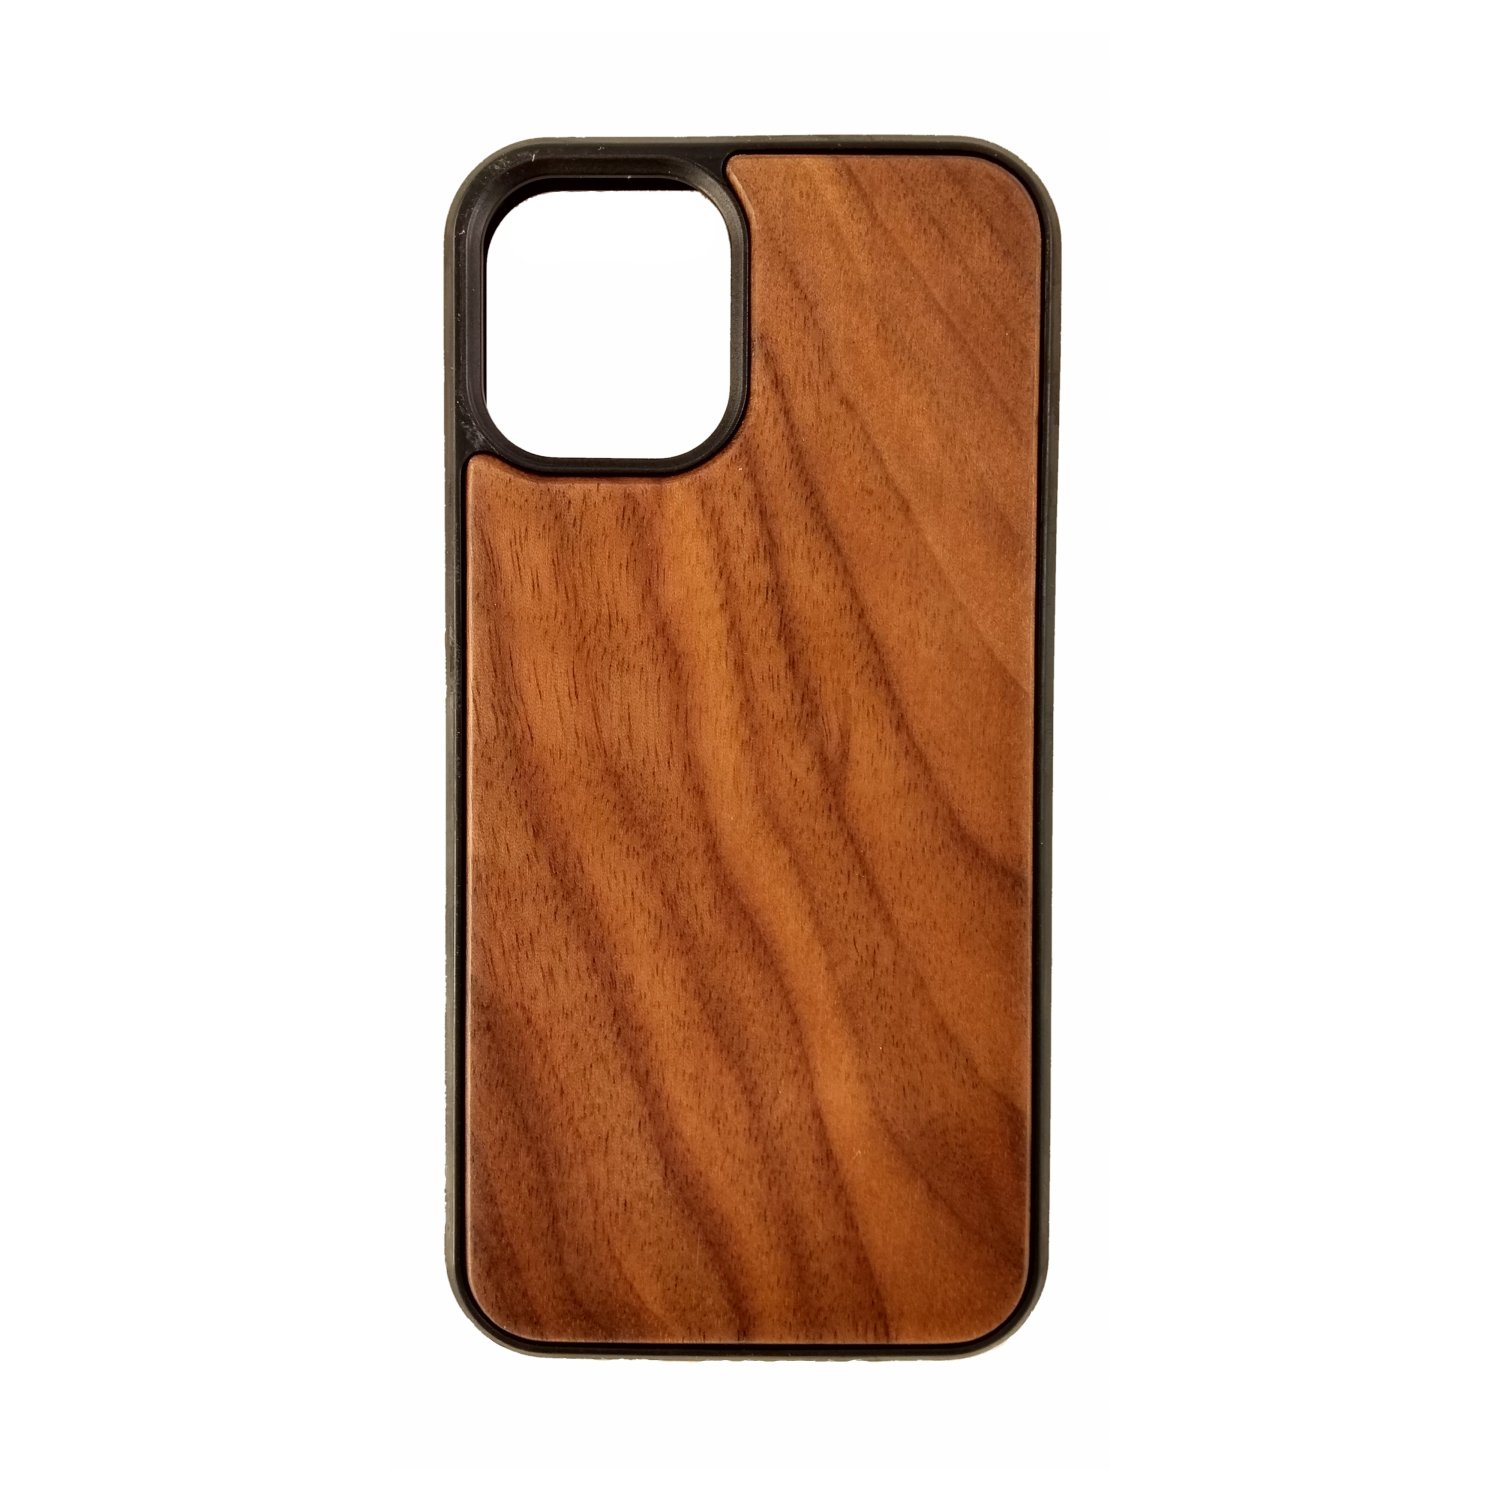 Schutzcover aus Holz und Kunststoff für Iphone 12 mini